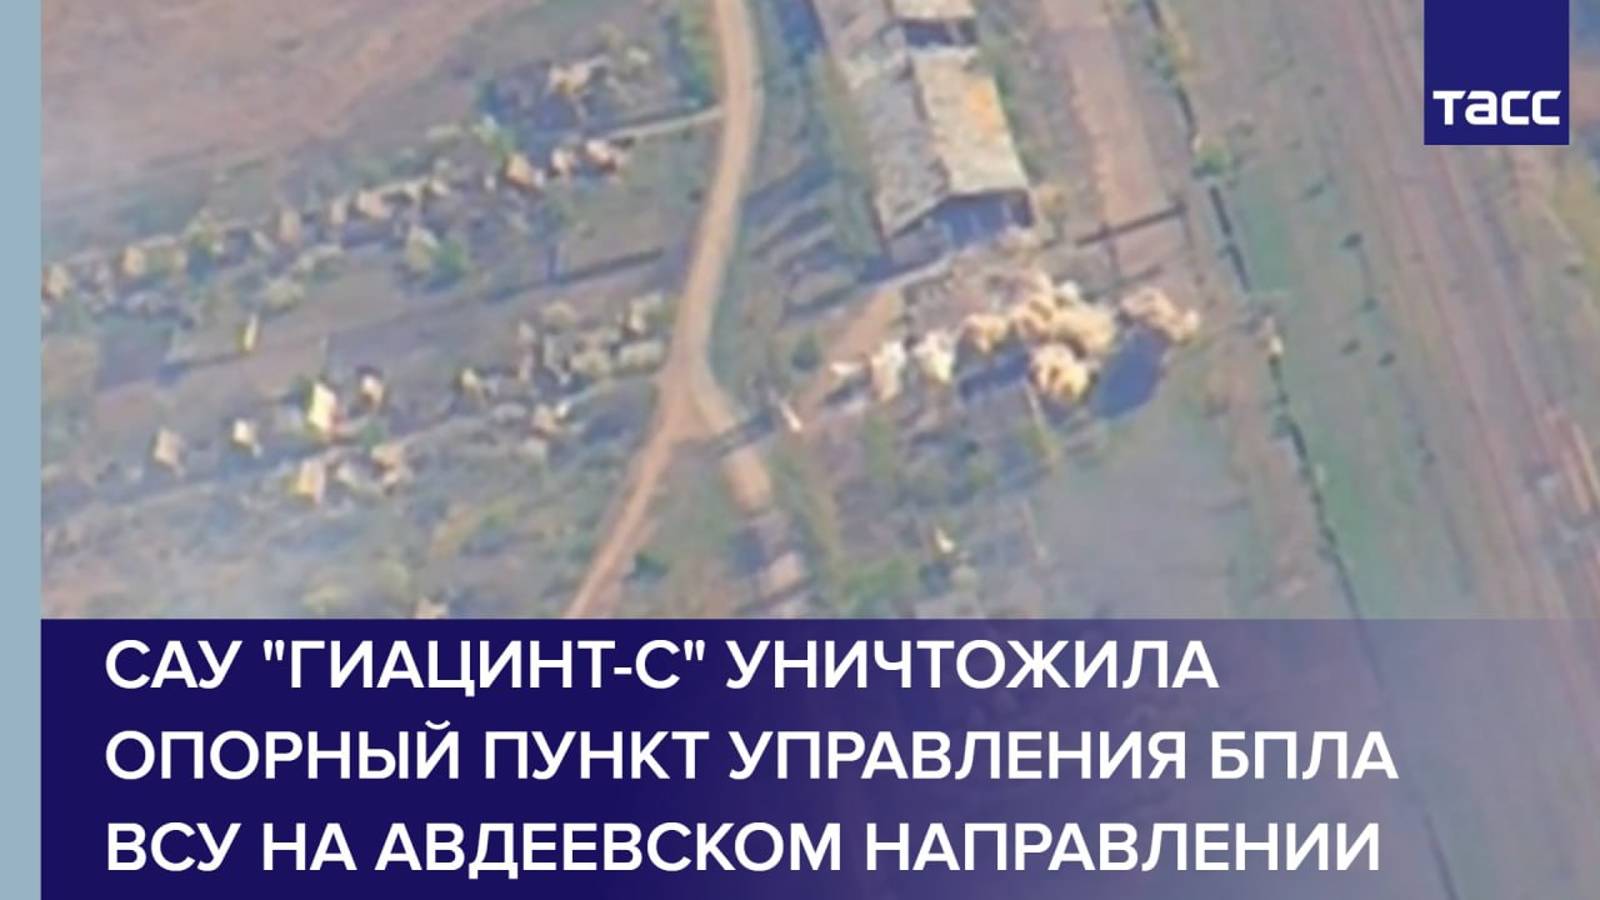 САУ "Гиацинт-С" уничтожила опорный пункт управления БПЛА ВСУ на авдеевском направлении